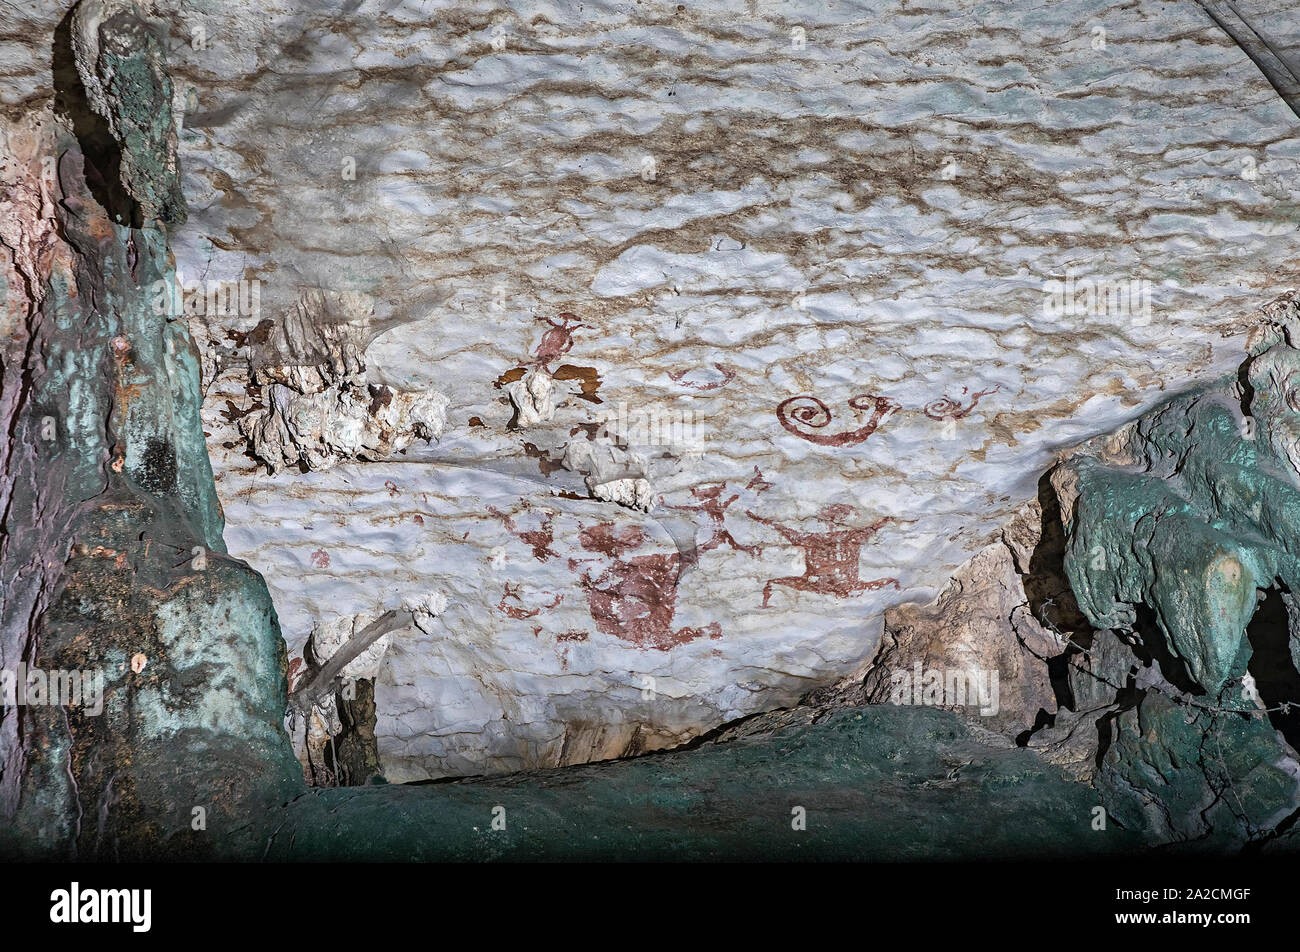 L'art préhistorique dans la grotte grotte peinte à l'INAH, Malaisie, jusqu'à 40 000 ans Banque D'Images